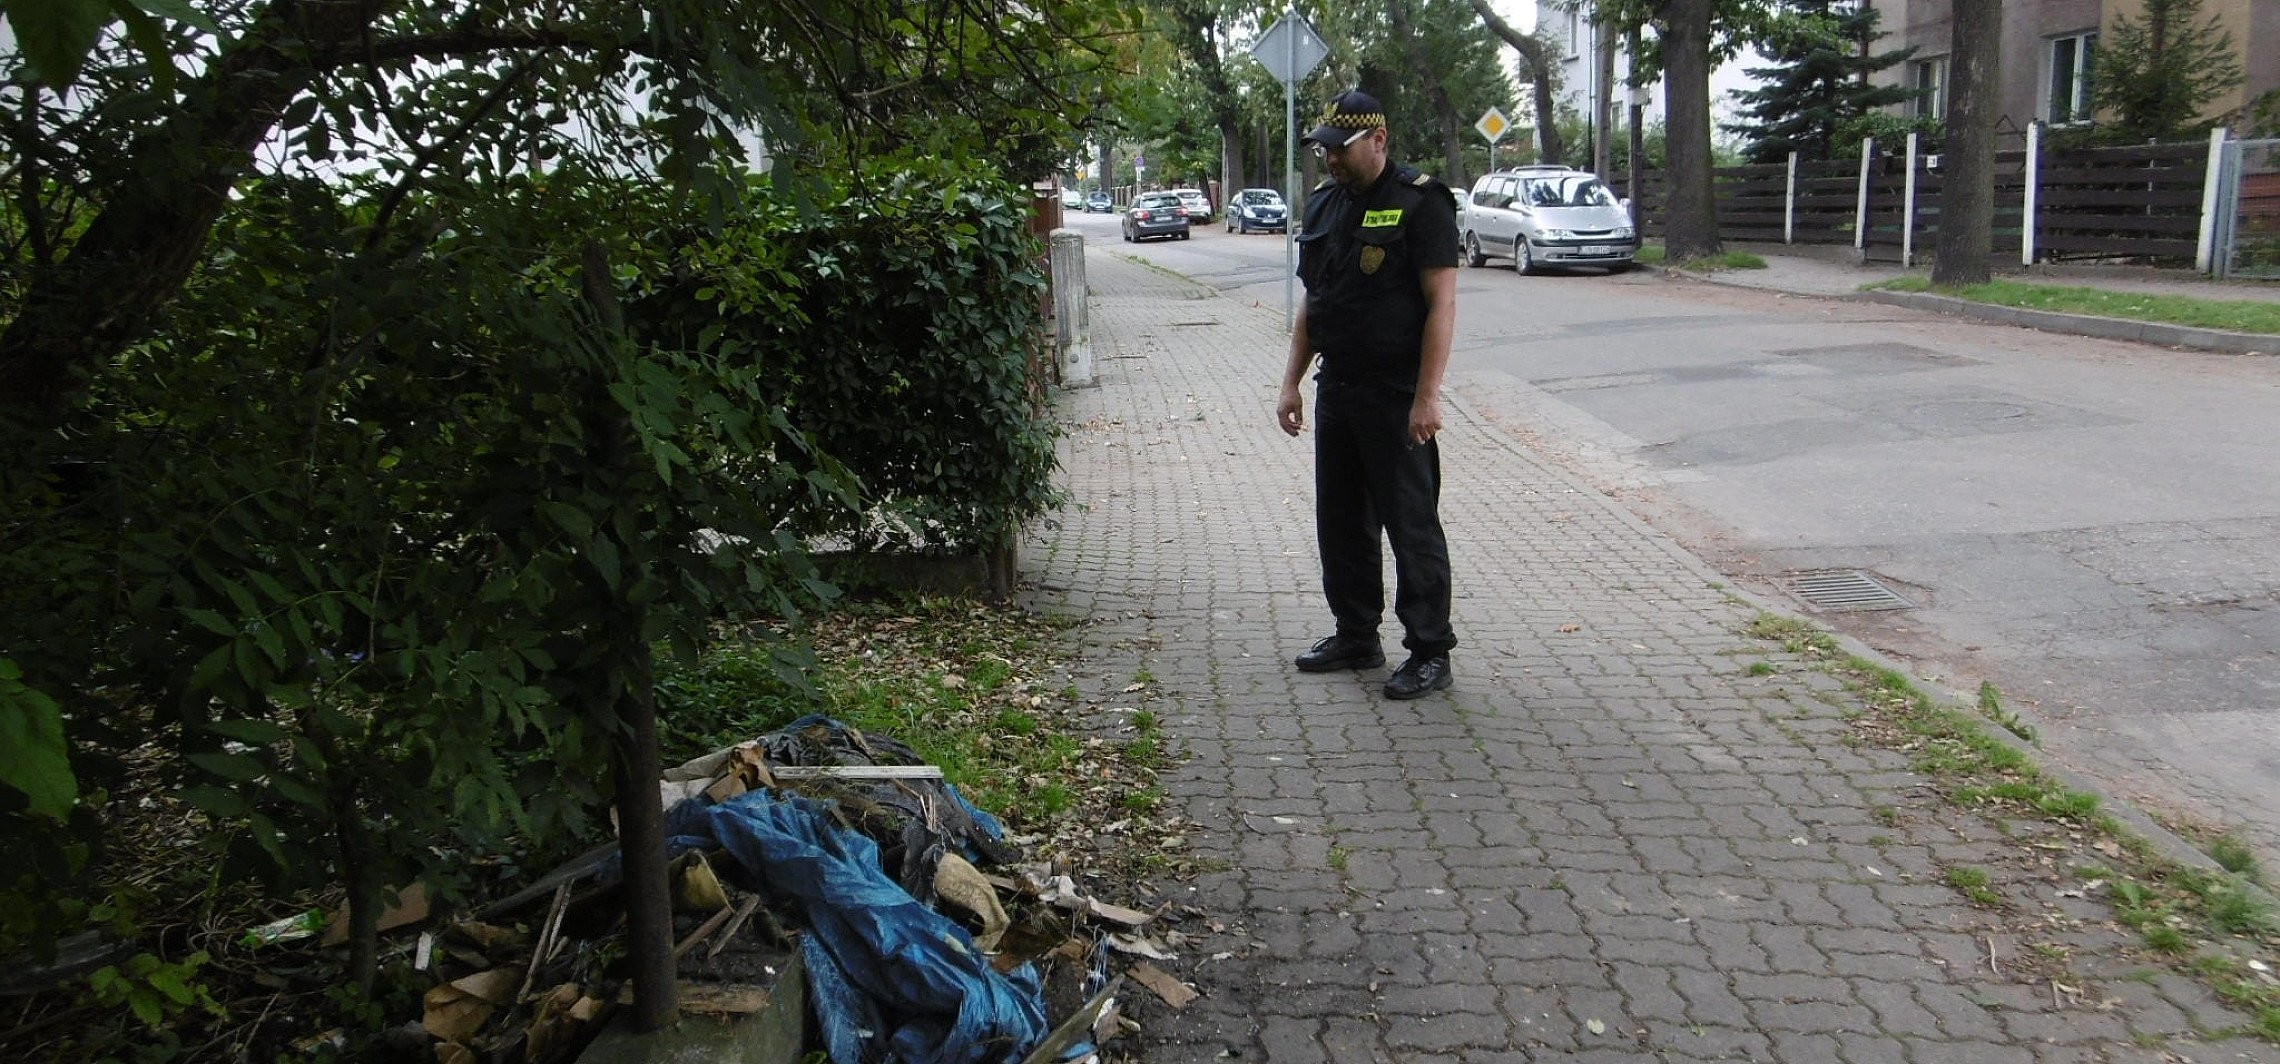 Inowrocław - Zamiast do kontenera, wyrzucił śmieci na chodniku